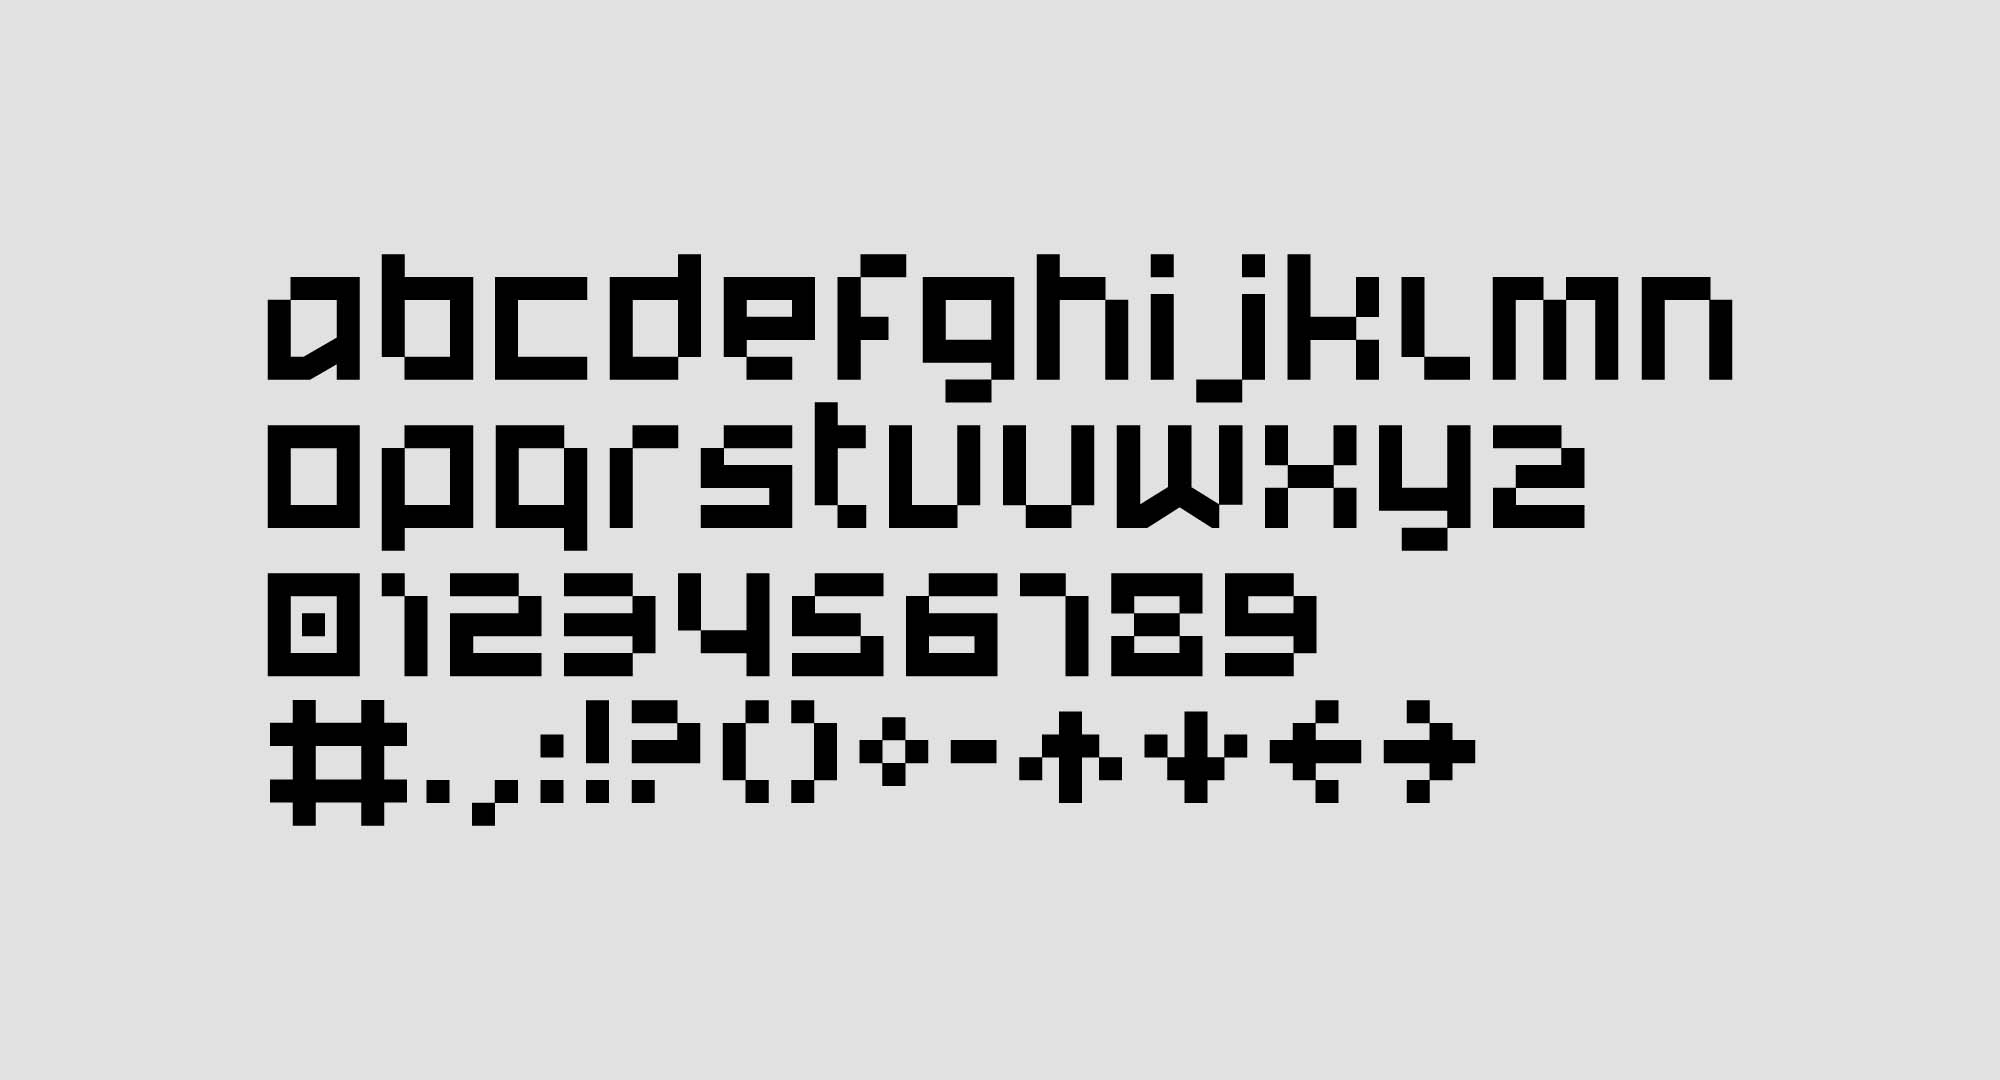 几何像素英文无衬线字体 Stopwatch Free Typeface插图(1)